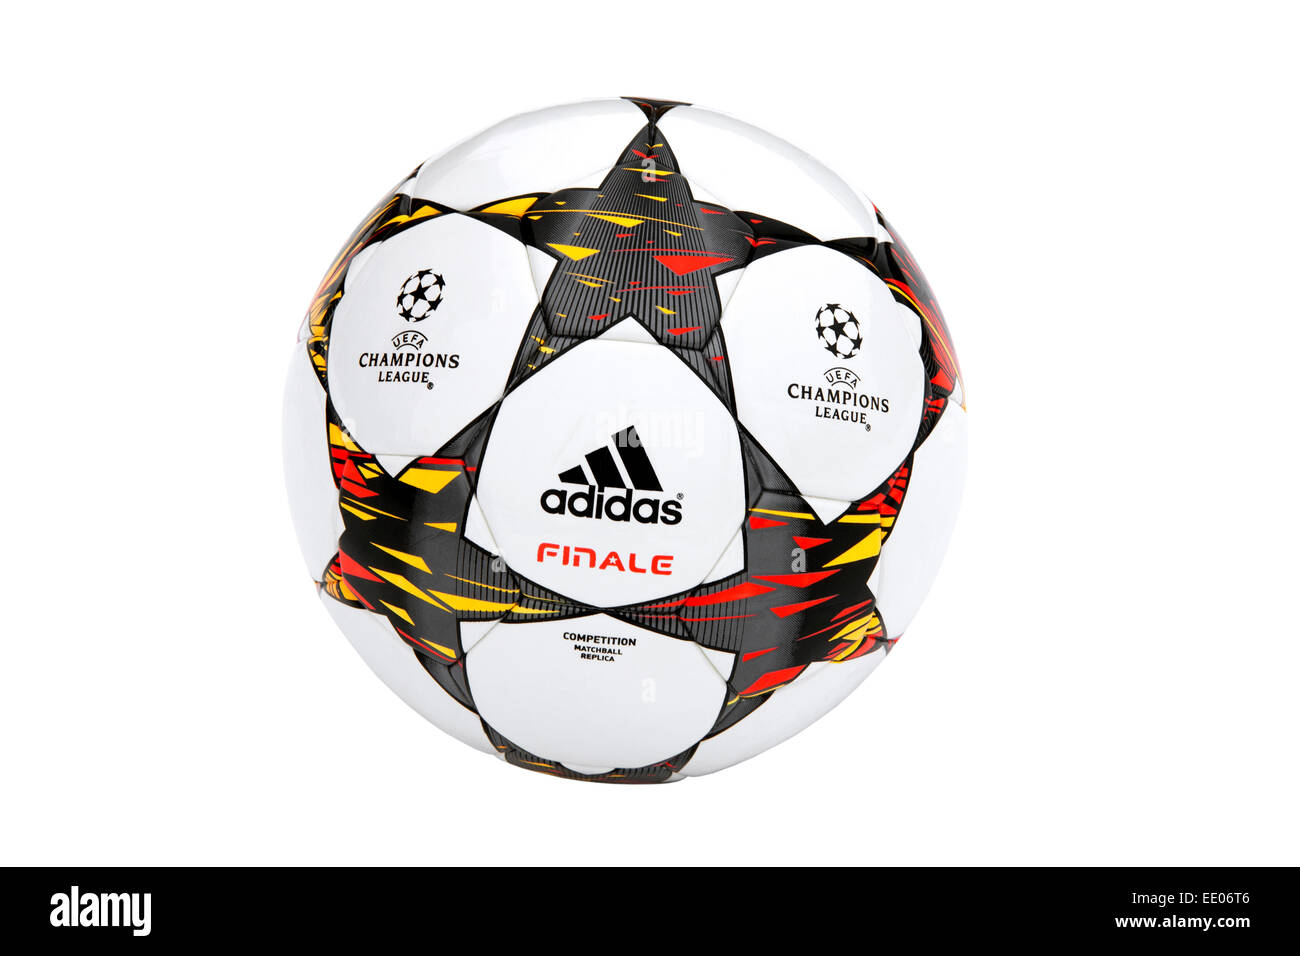 La Adidas 2014-2015 Finale UEFA Champions League sfera isolata su sfondo bianco Foto Stock